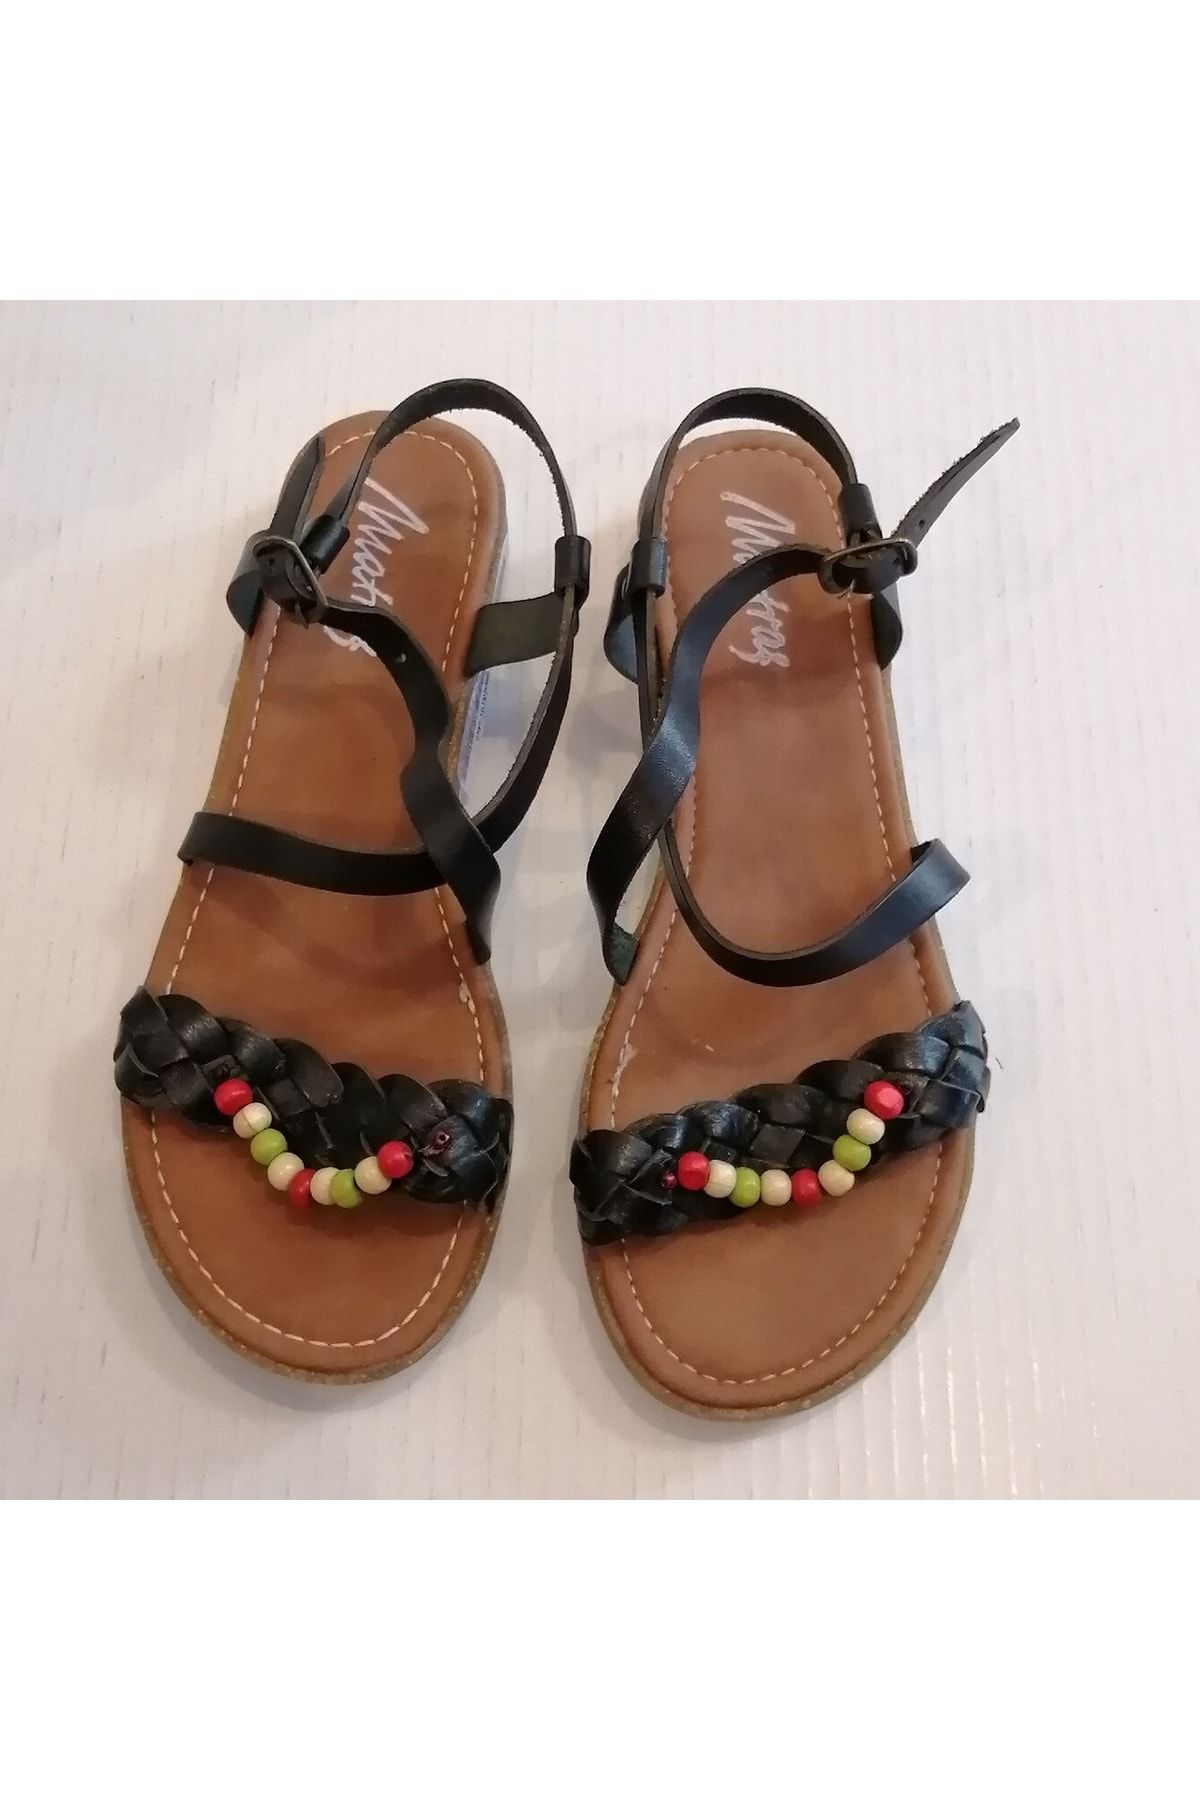 Matraş Kadın Hakiki Deri Siyah Örgü Bantlı Ahşap Boncuklu Bilekten Bantlı Kauçuk Tabanlı Sandalet